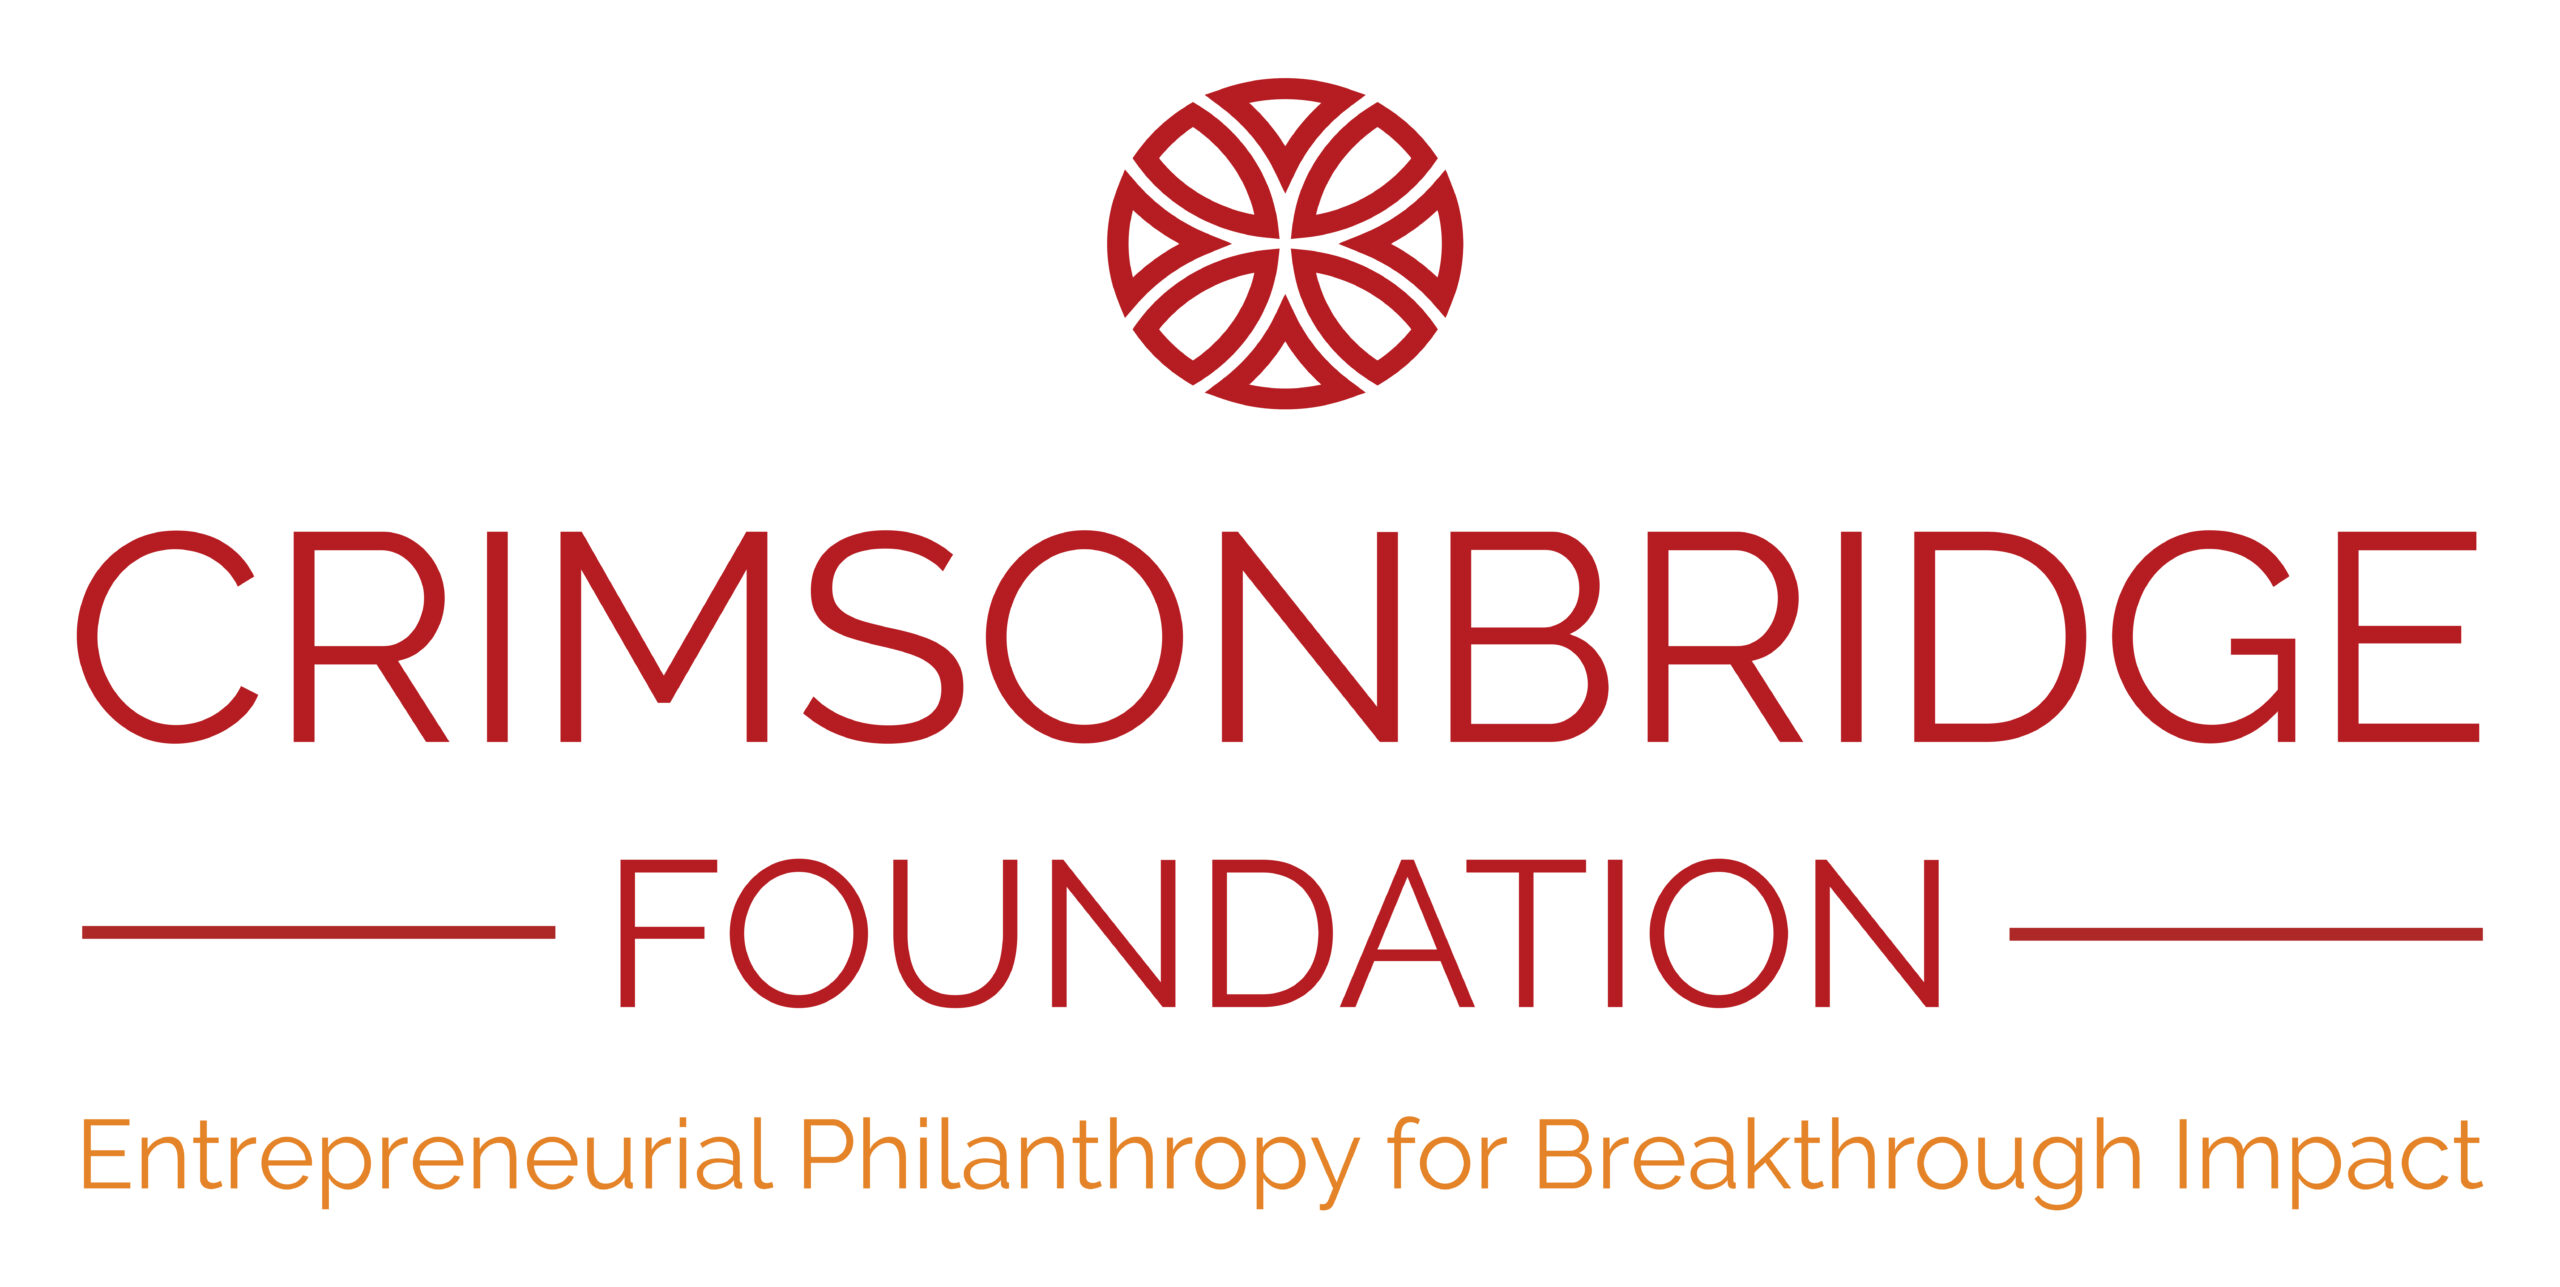 The logo for the Crimsonbridge Foundation